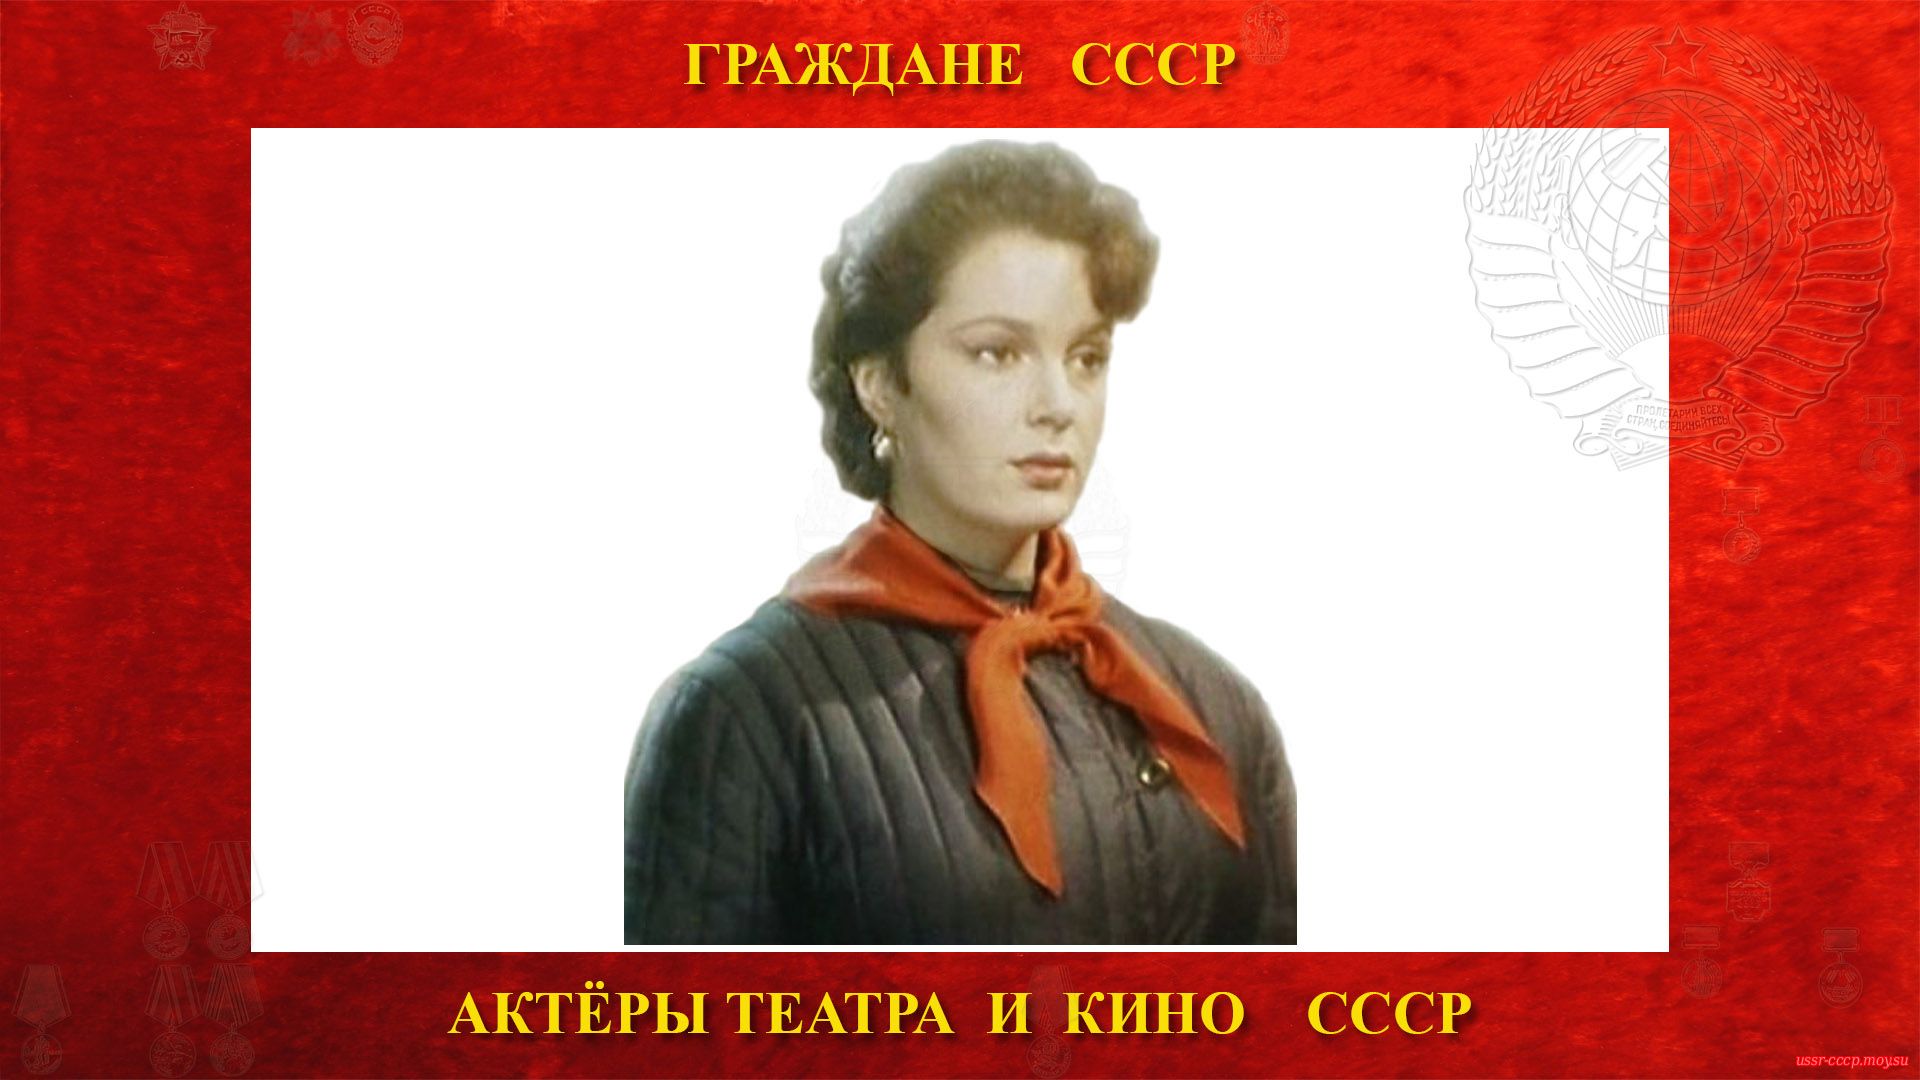 Быстрицкая Элина Аврамовна — Советская актриса театра и кино